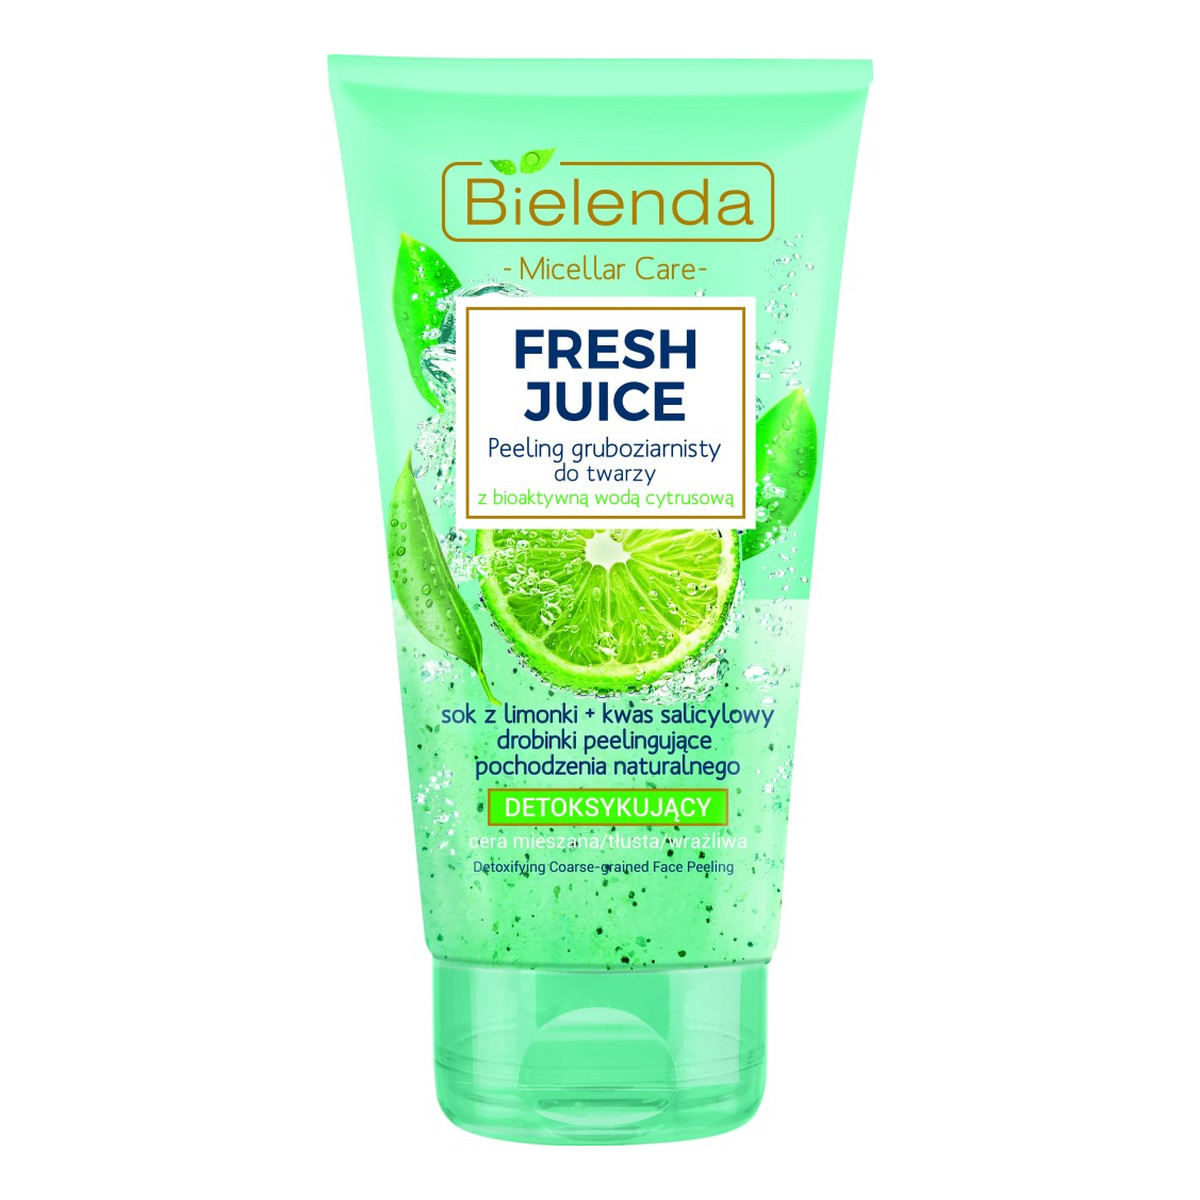 Bielenda Fresh Juice Limonka gruboziarnisty peeling detoksykujący do twarzy 150g